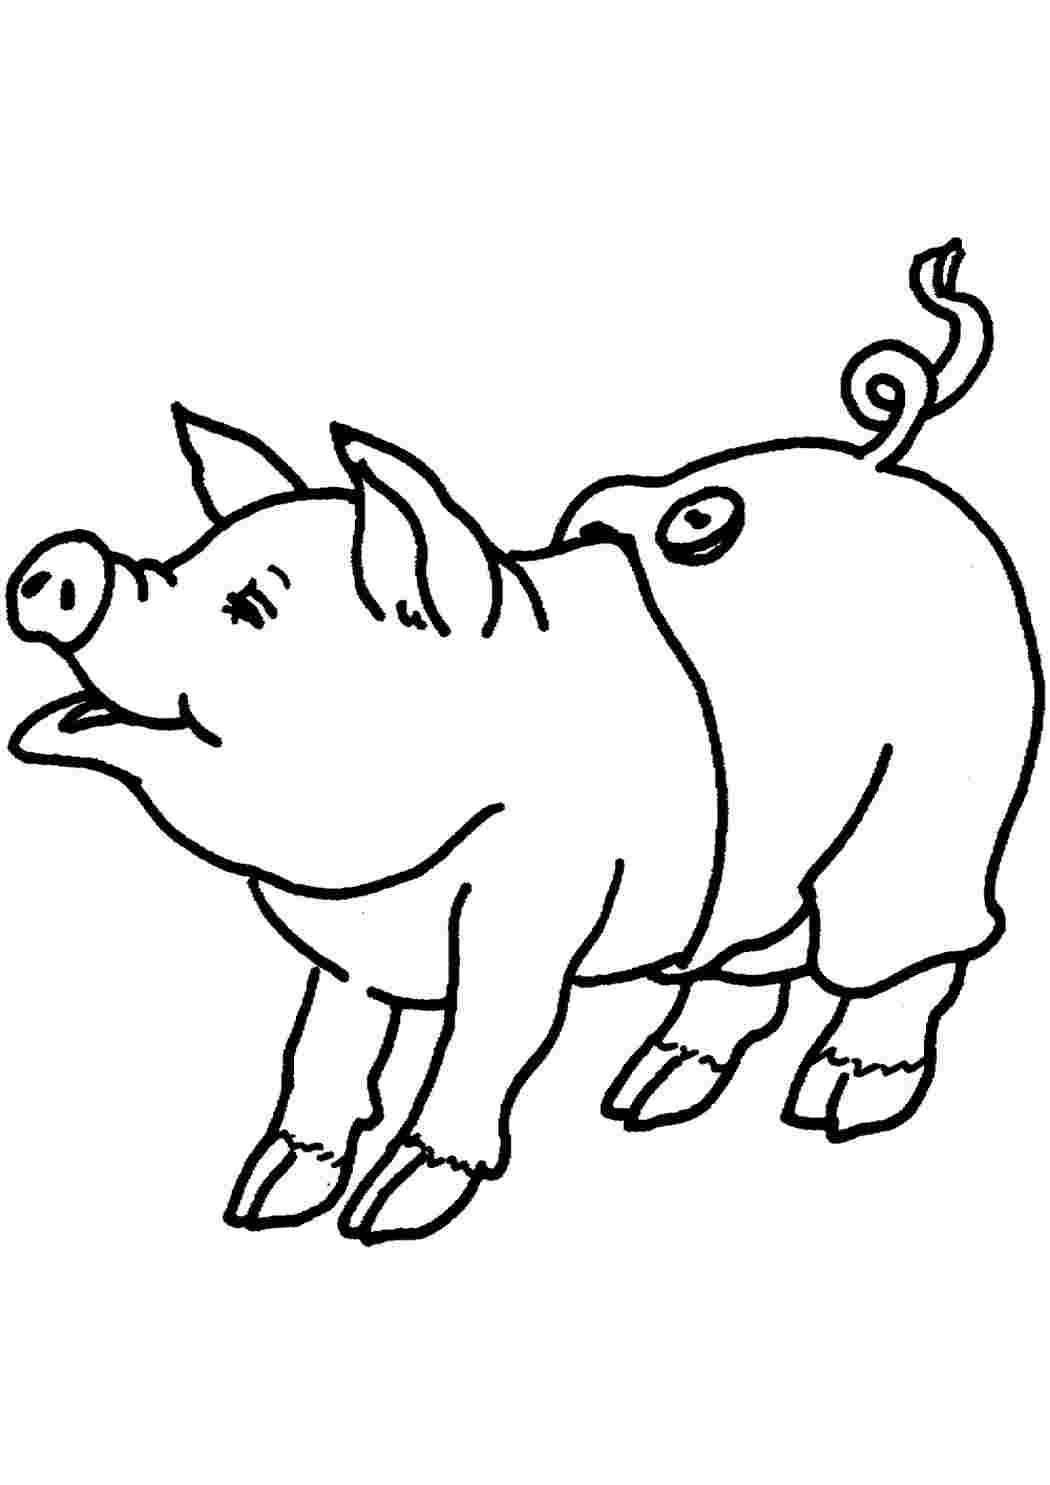 Свинья рисунок: векторные изображения и иллюстрации, которые можно скачать бесплатно | Freepik